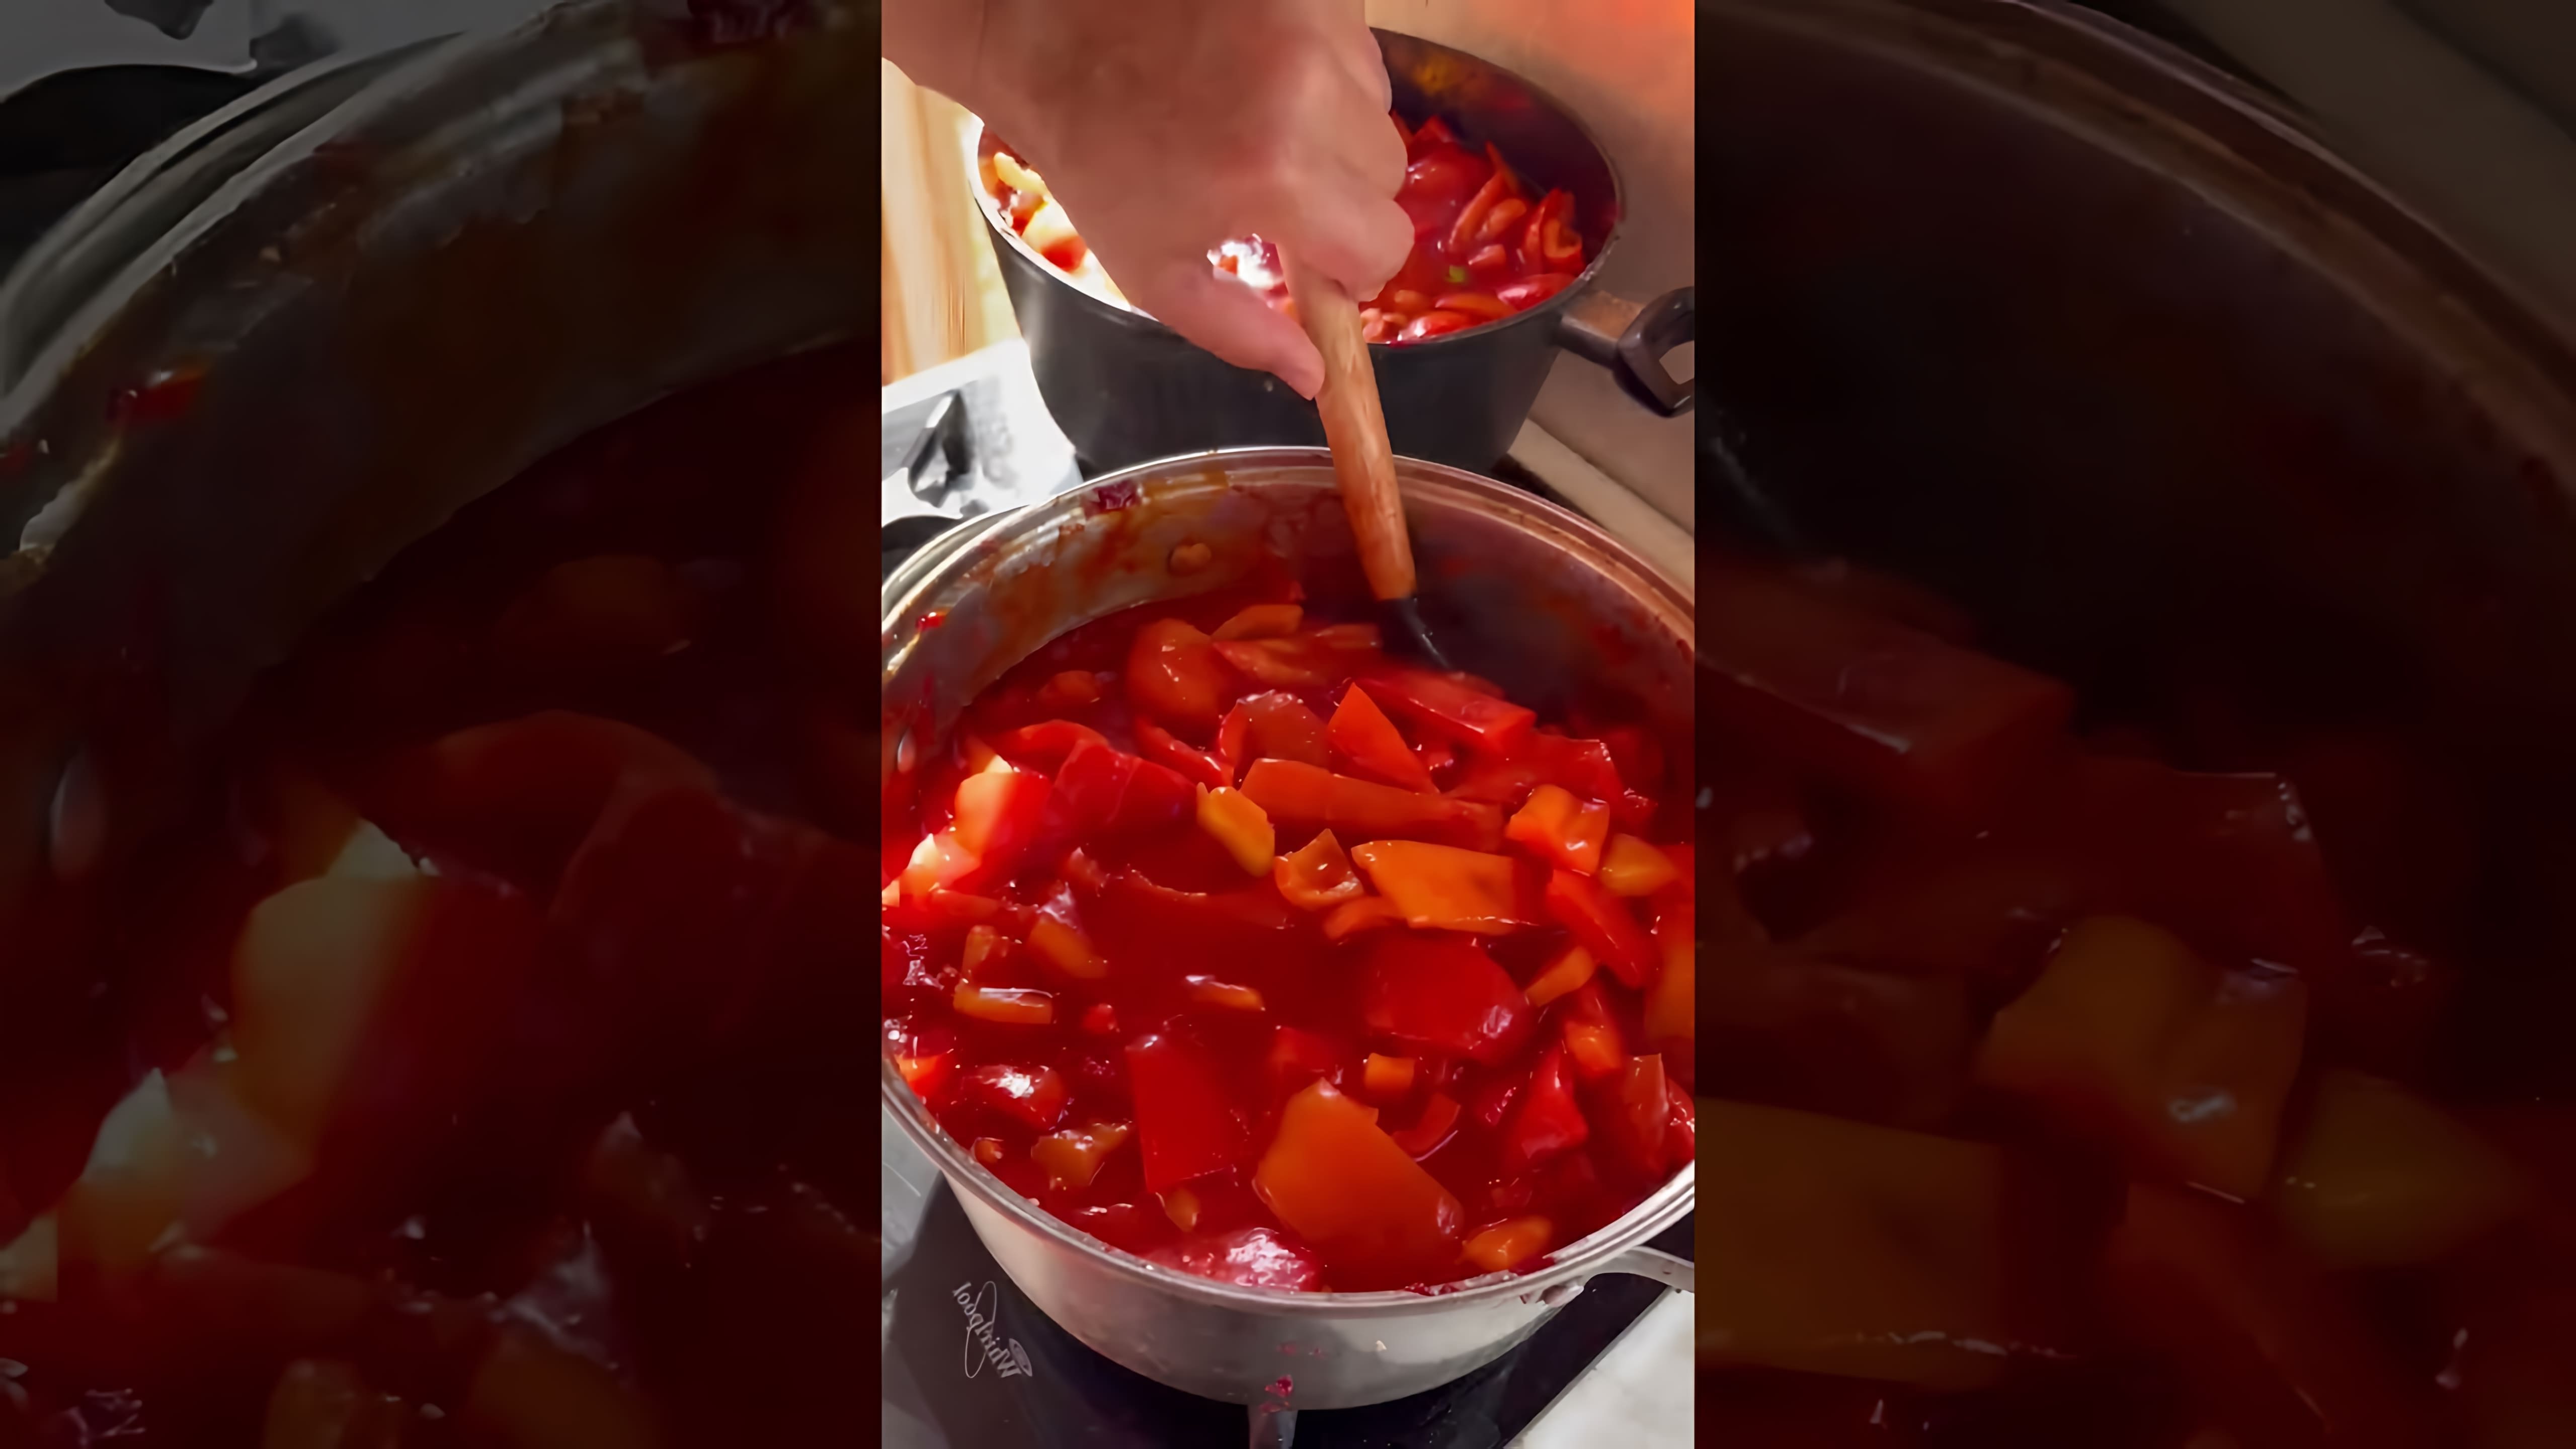 Видео посвящено приготовлению рецепта лечо, вида перченого соуса или джема